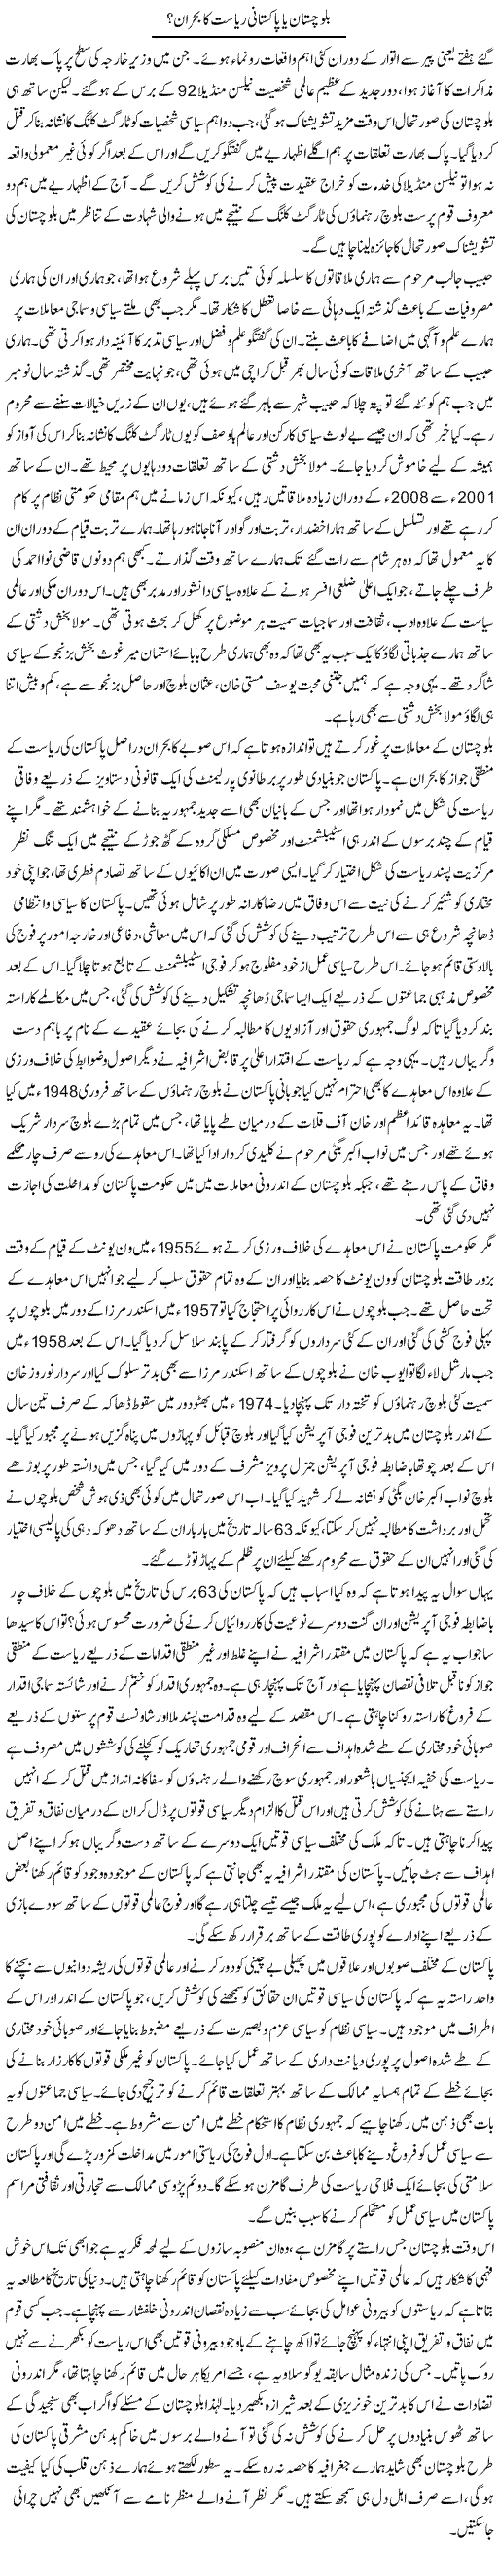 Balochistan Bohraan Express column Muqtada Mansoor 19 July 2010